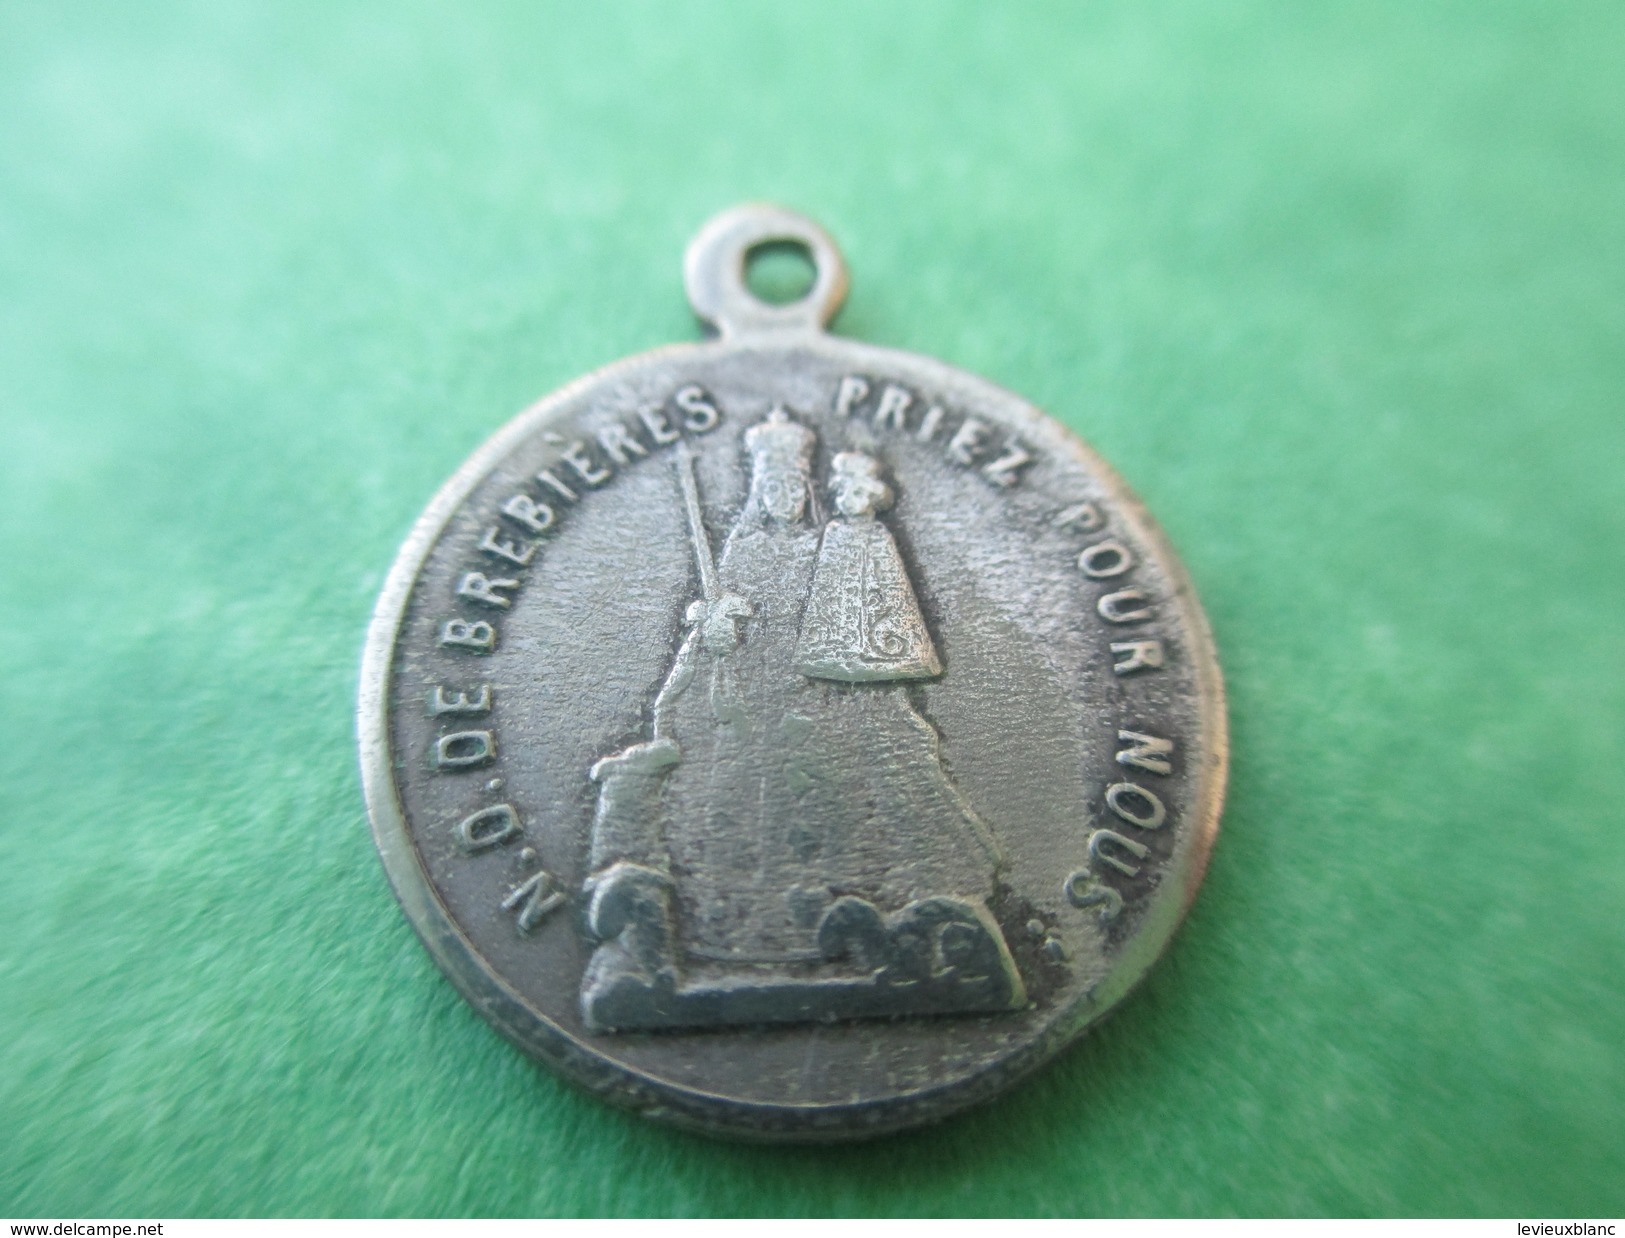 Médaille Ancienne Religieuse/ND De Brebiéres Priez Pour Nous/Souvenir De Pèlerinage/ Albert Somme/19éme Siécle    CAN271 - Religion & Esotericism